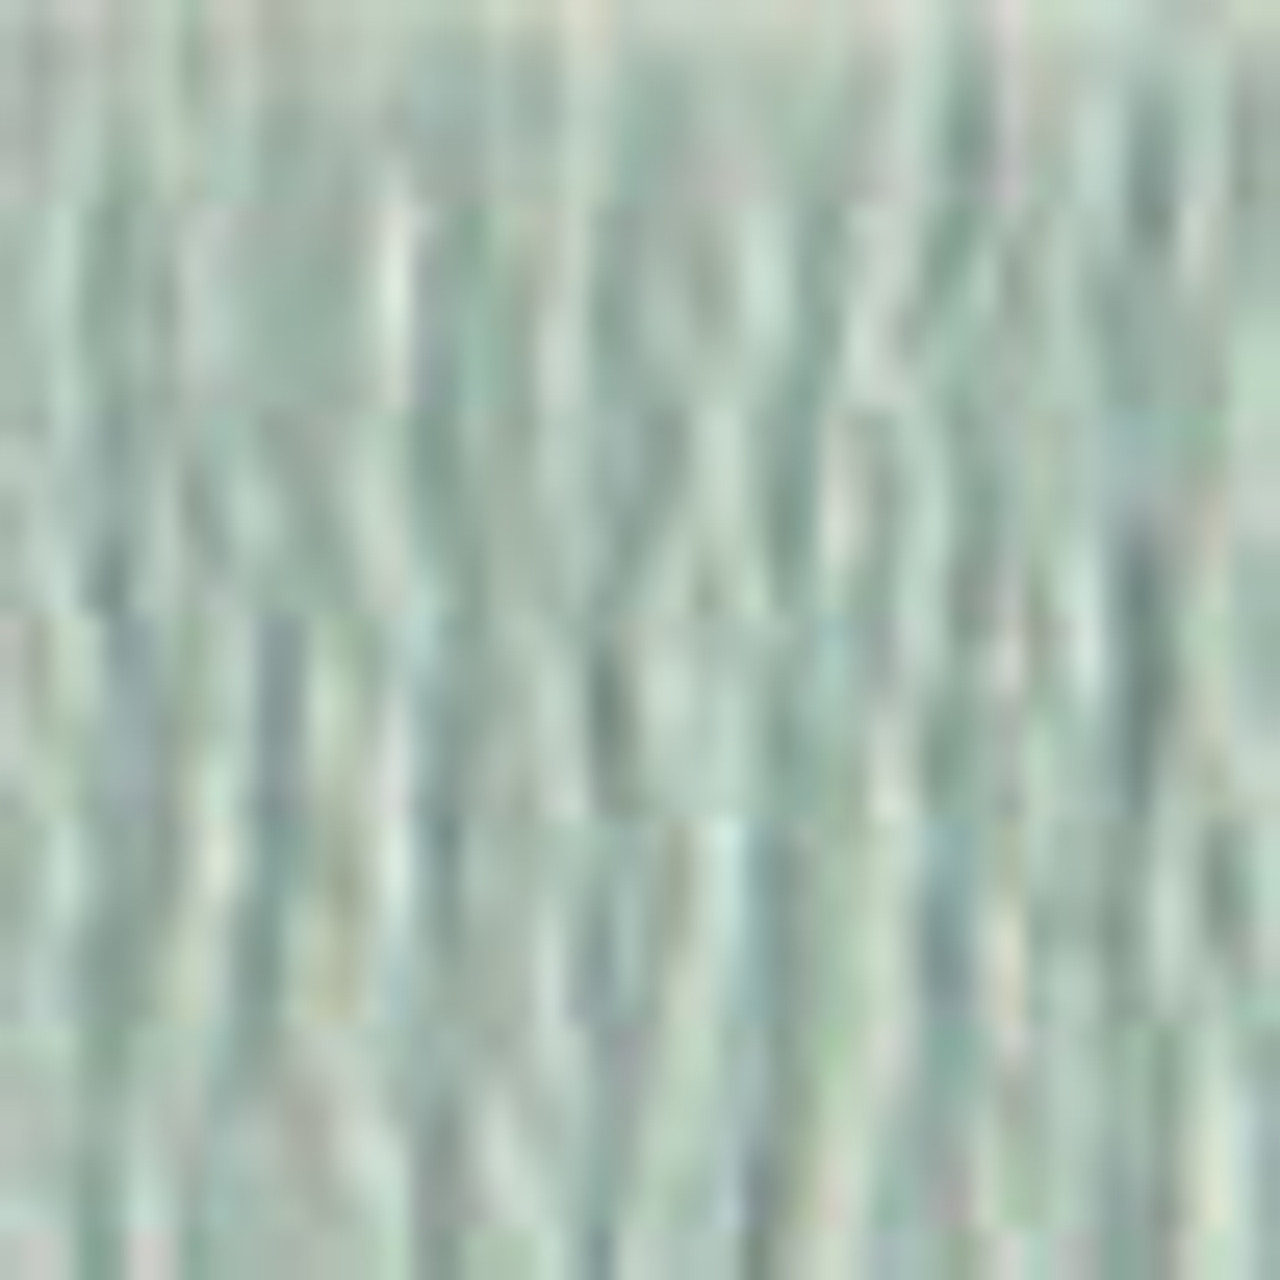 DMC # 927 Light Gray Green Floss / Thread